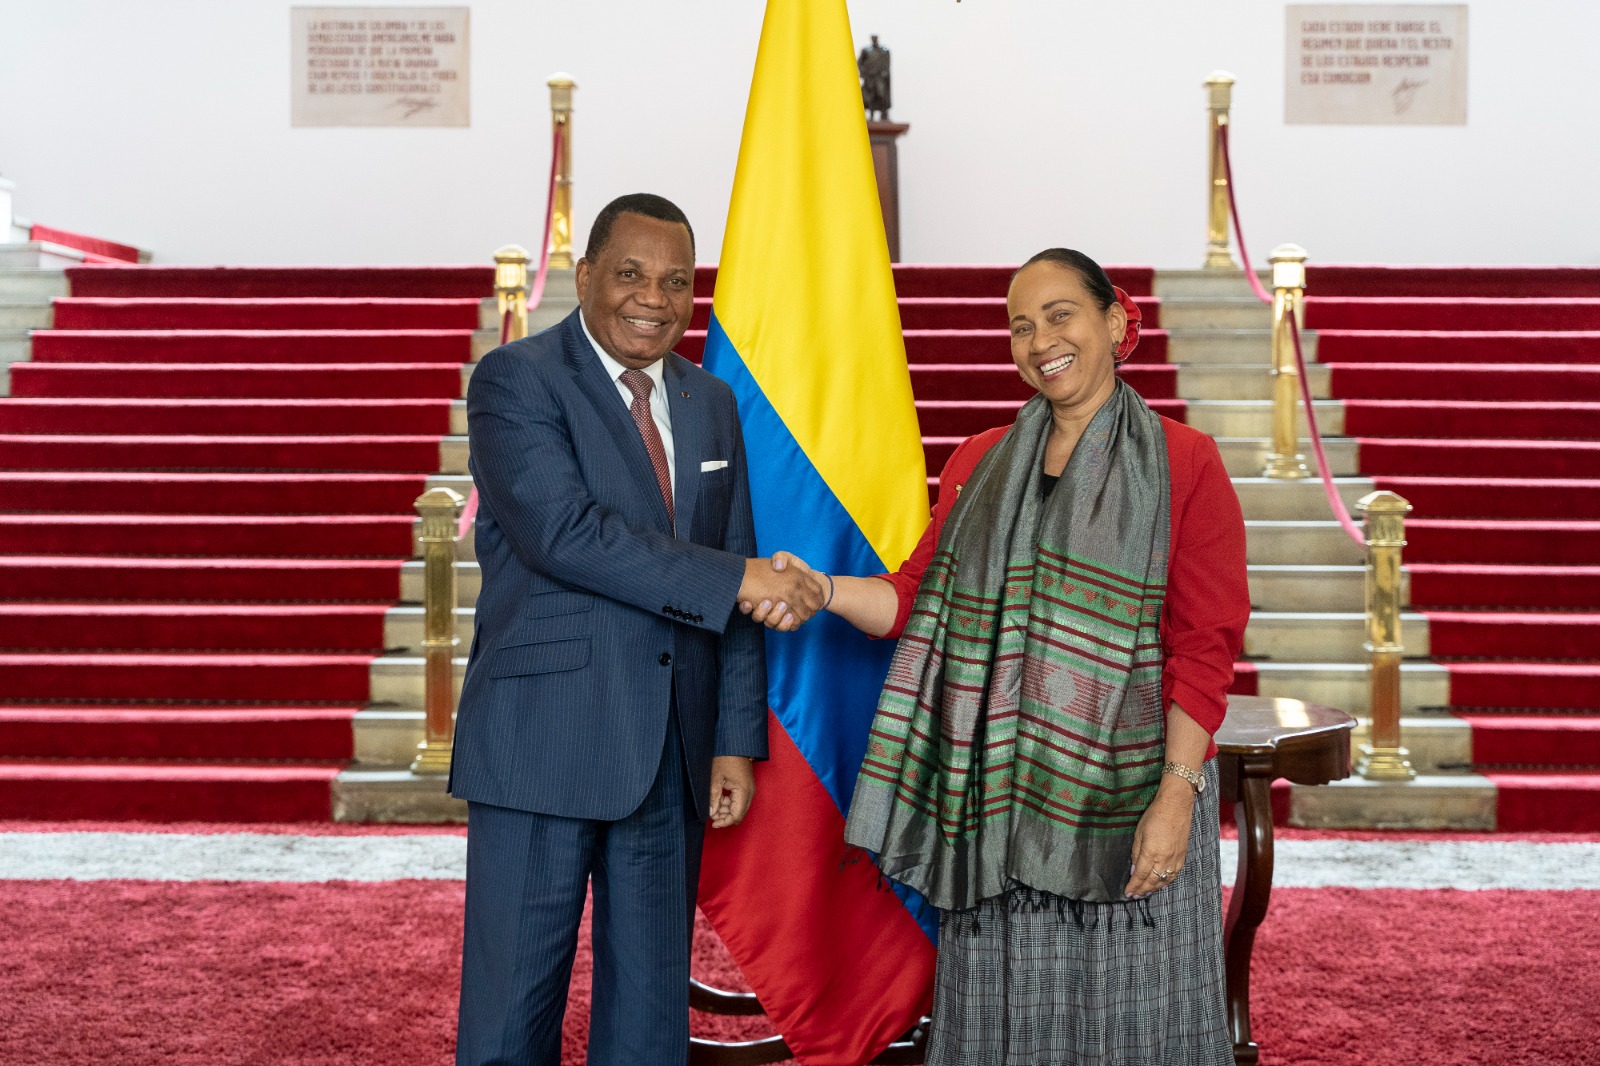 Viceministra de Asuntos Multilaterales Elizabeth Taylor Jay recibe al Ministro de Relaciones Exteriores de la República del Congo Jean-Claude Gakosso en el marco de su gira por los países amazónicos